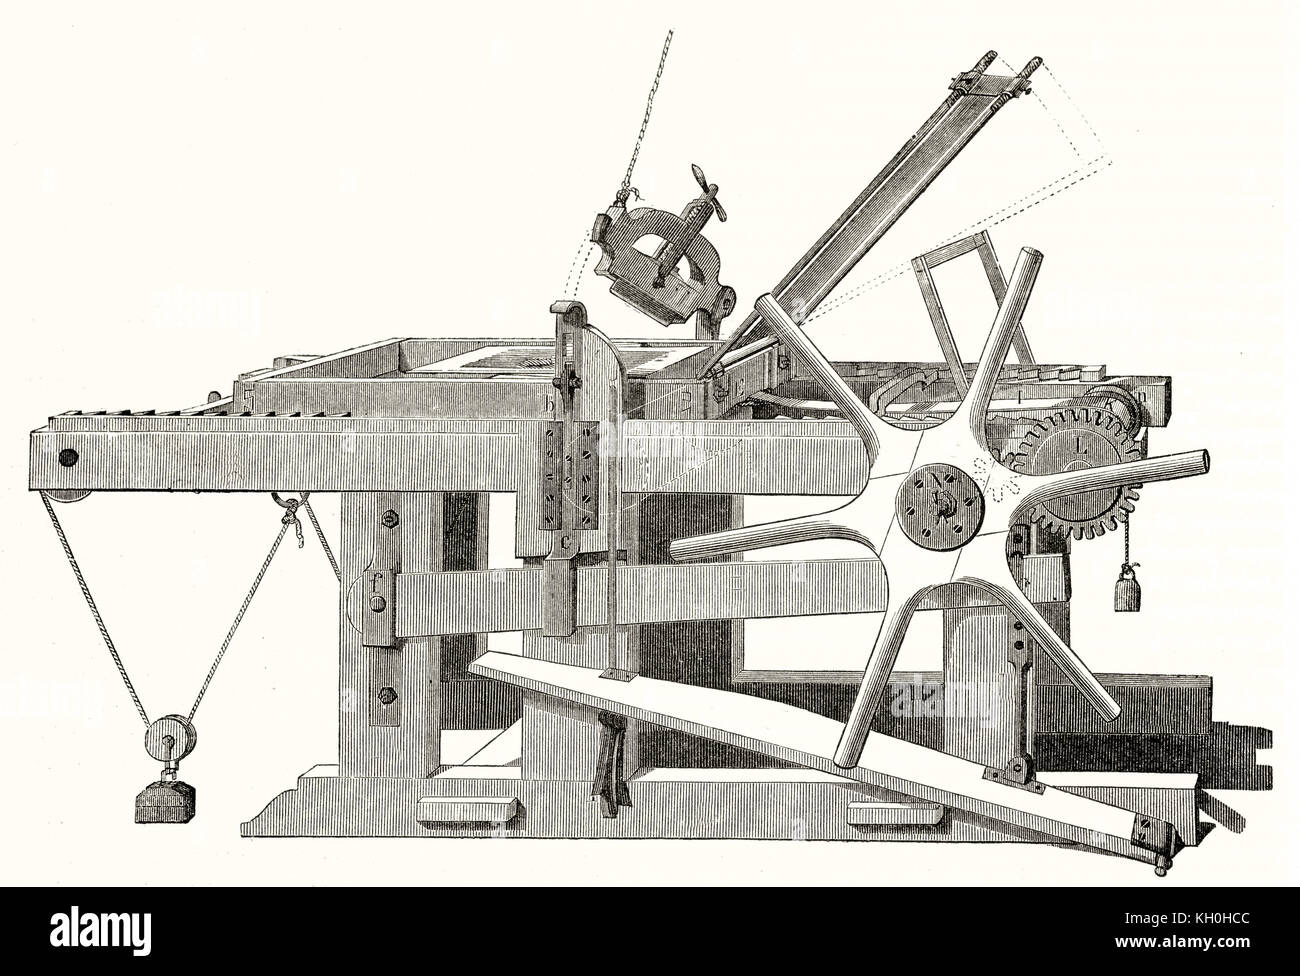 Ilustración de una antigua prensa de litografía. Por autor no identificado, publ. en el Magasin pintoresco, París, 1847 Foto de stock